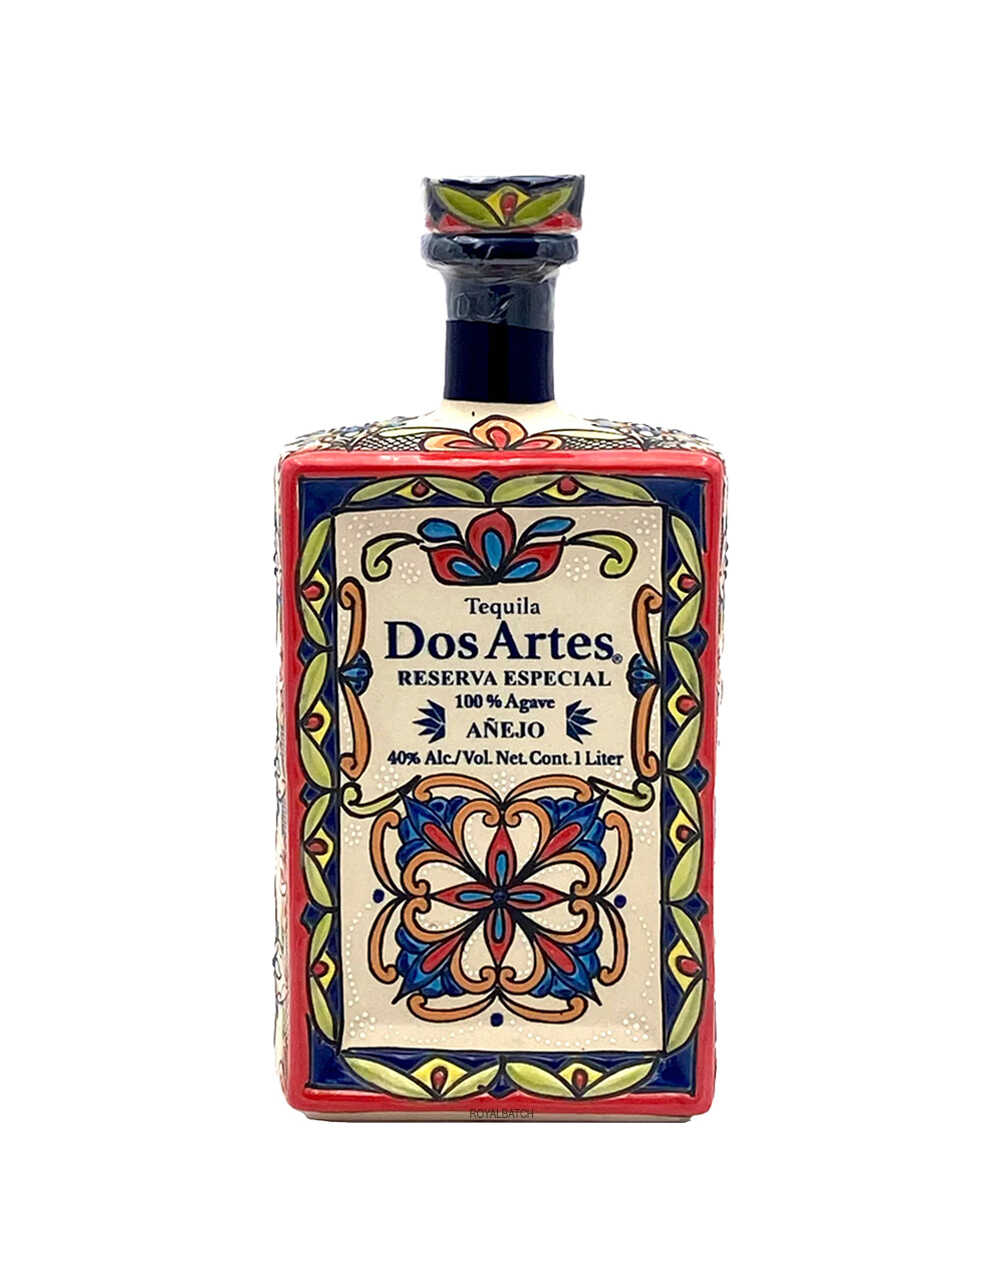 Dos Artes Extra Anejo Reserva Especial Tequila 1L